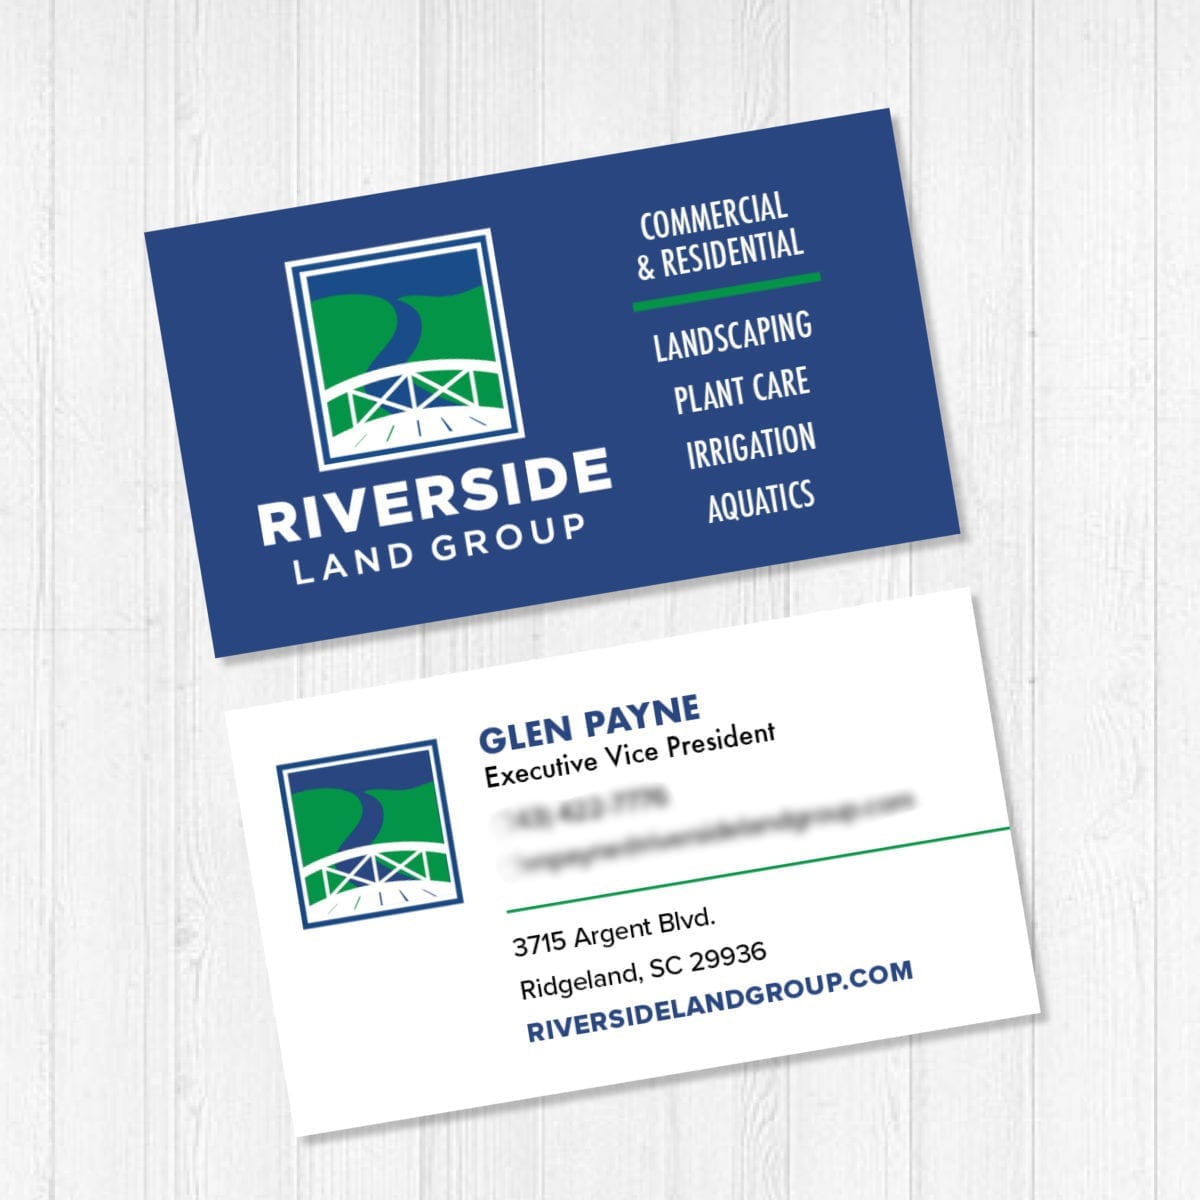 Riverside Land Group business card design